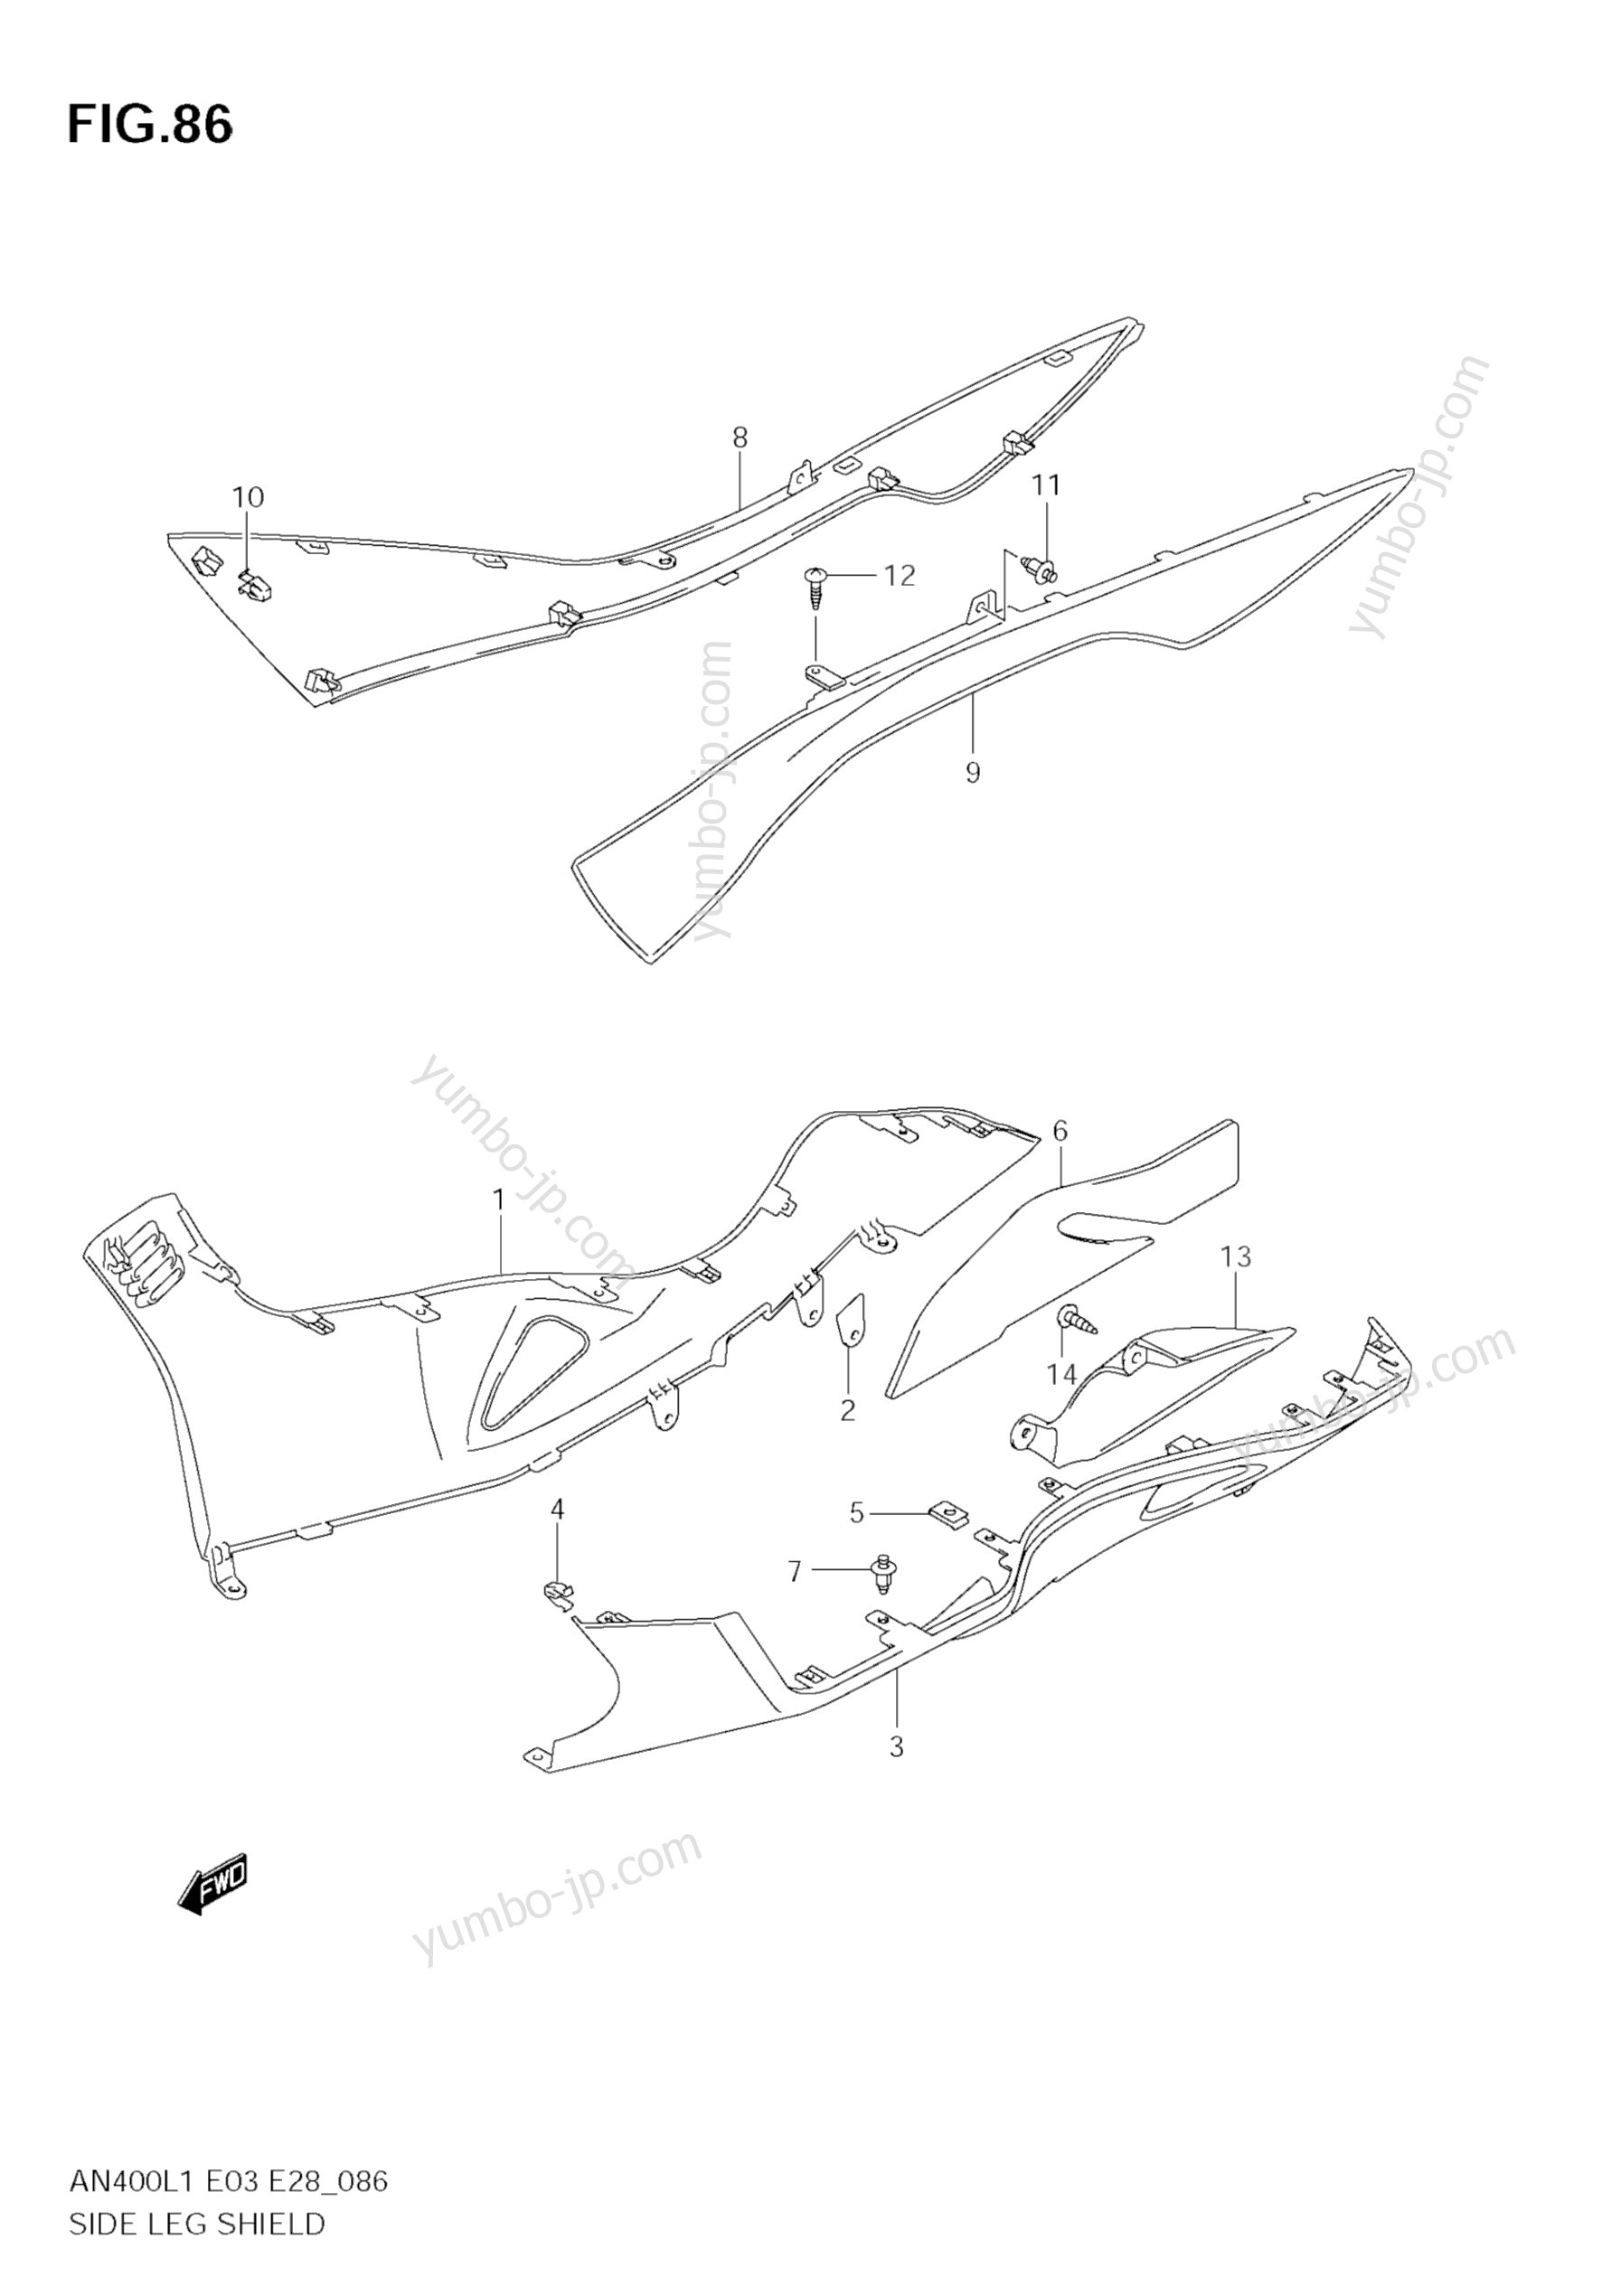 SIDE LEG SHIELD (AN400ZA L1 E33) for scooters SUZUKI Burgman (AN400) 2011 year